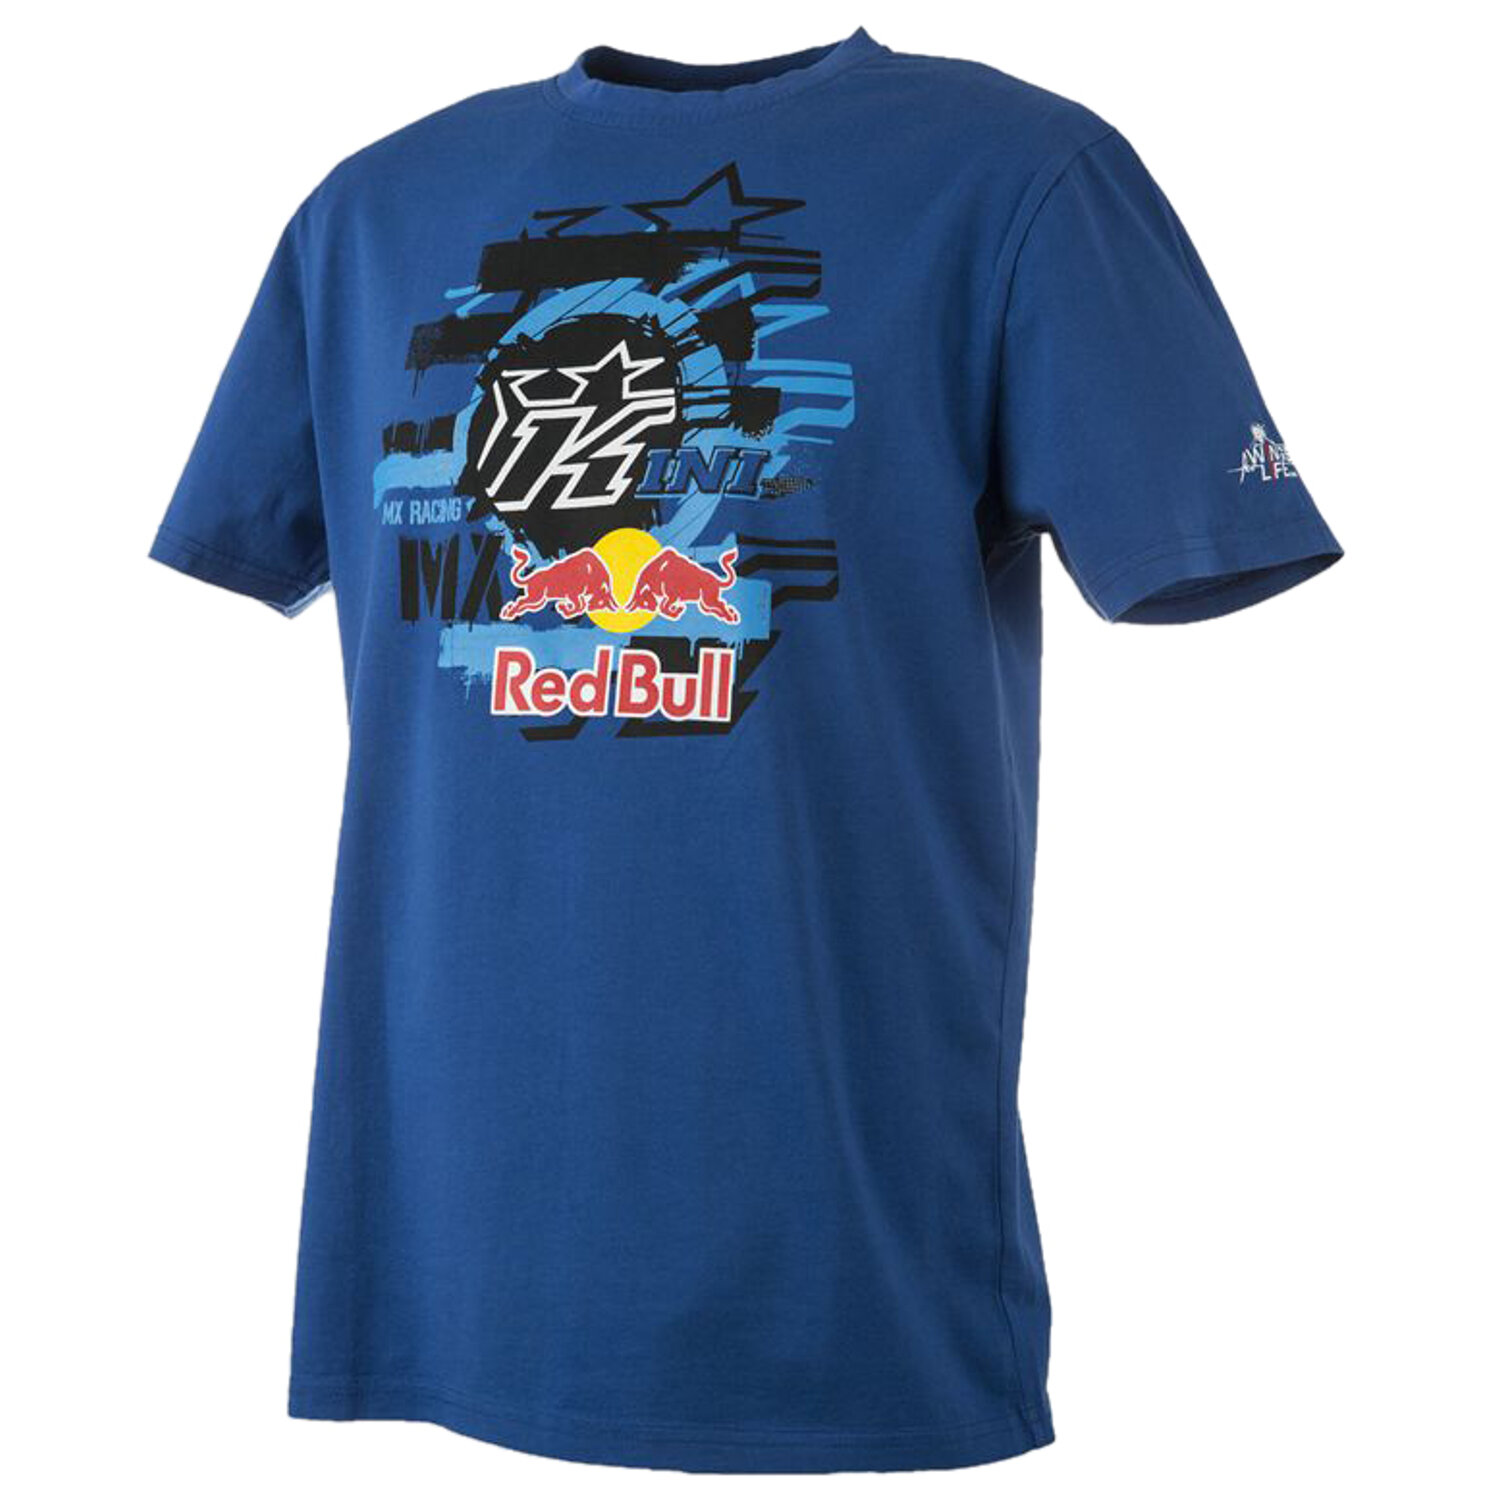 Kini Red Bull Kids T-Shirt Layered Navy